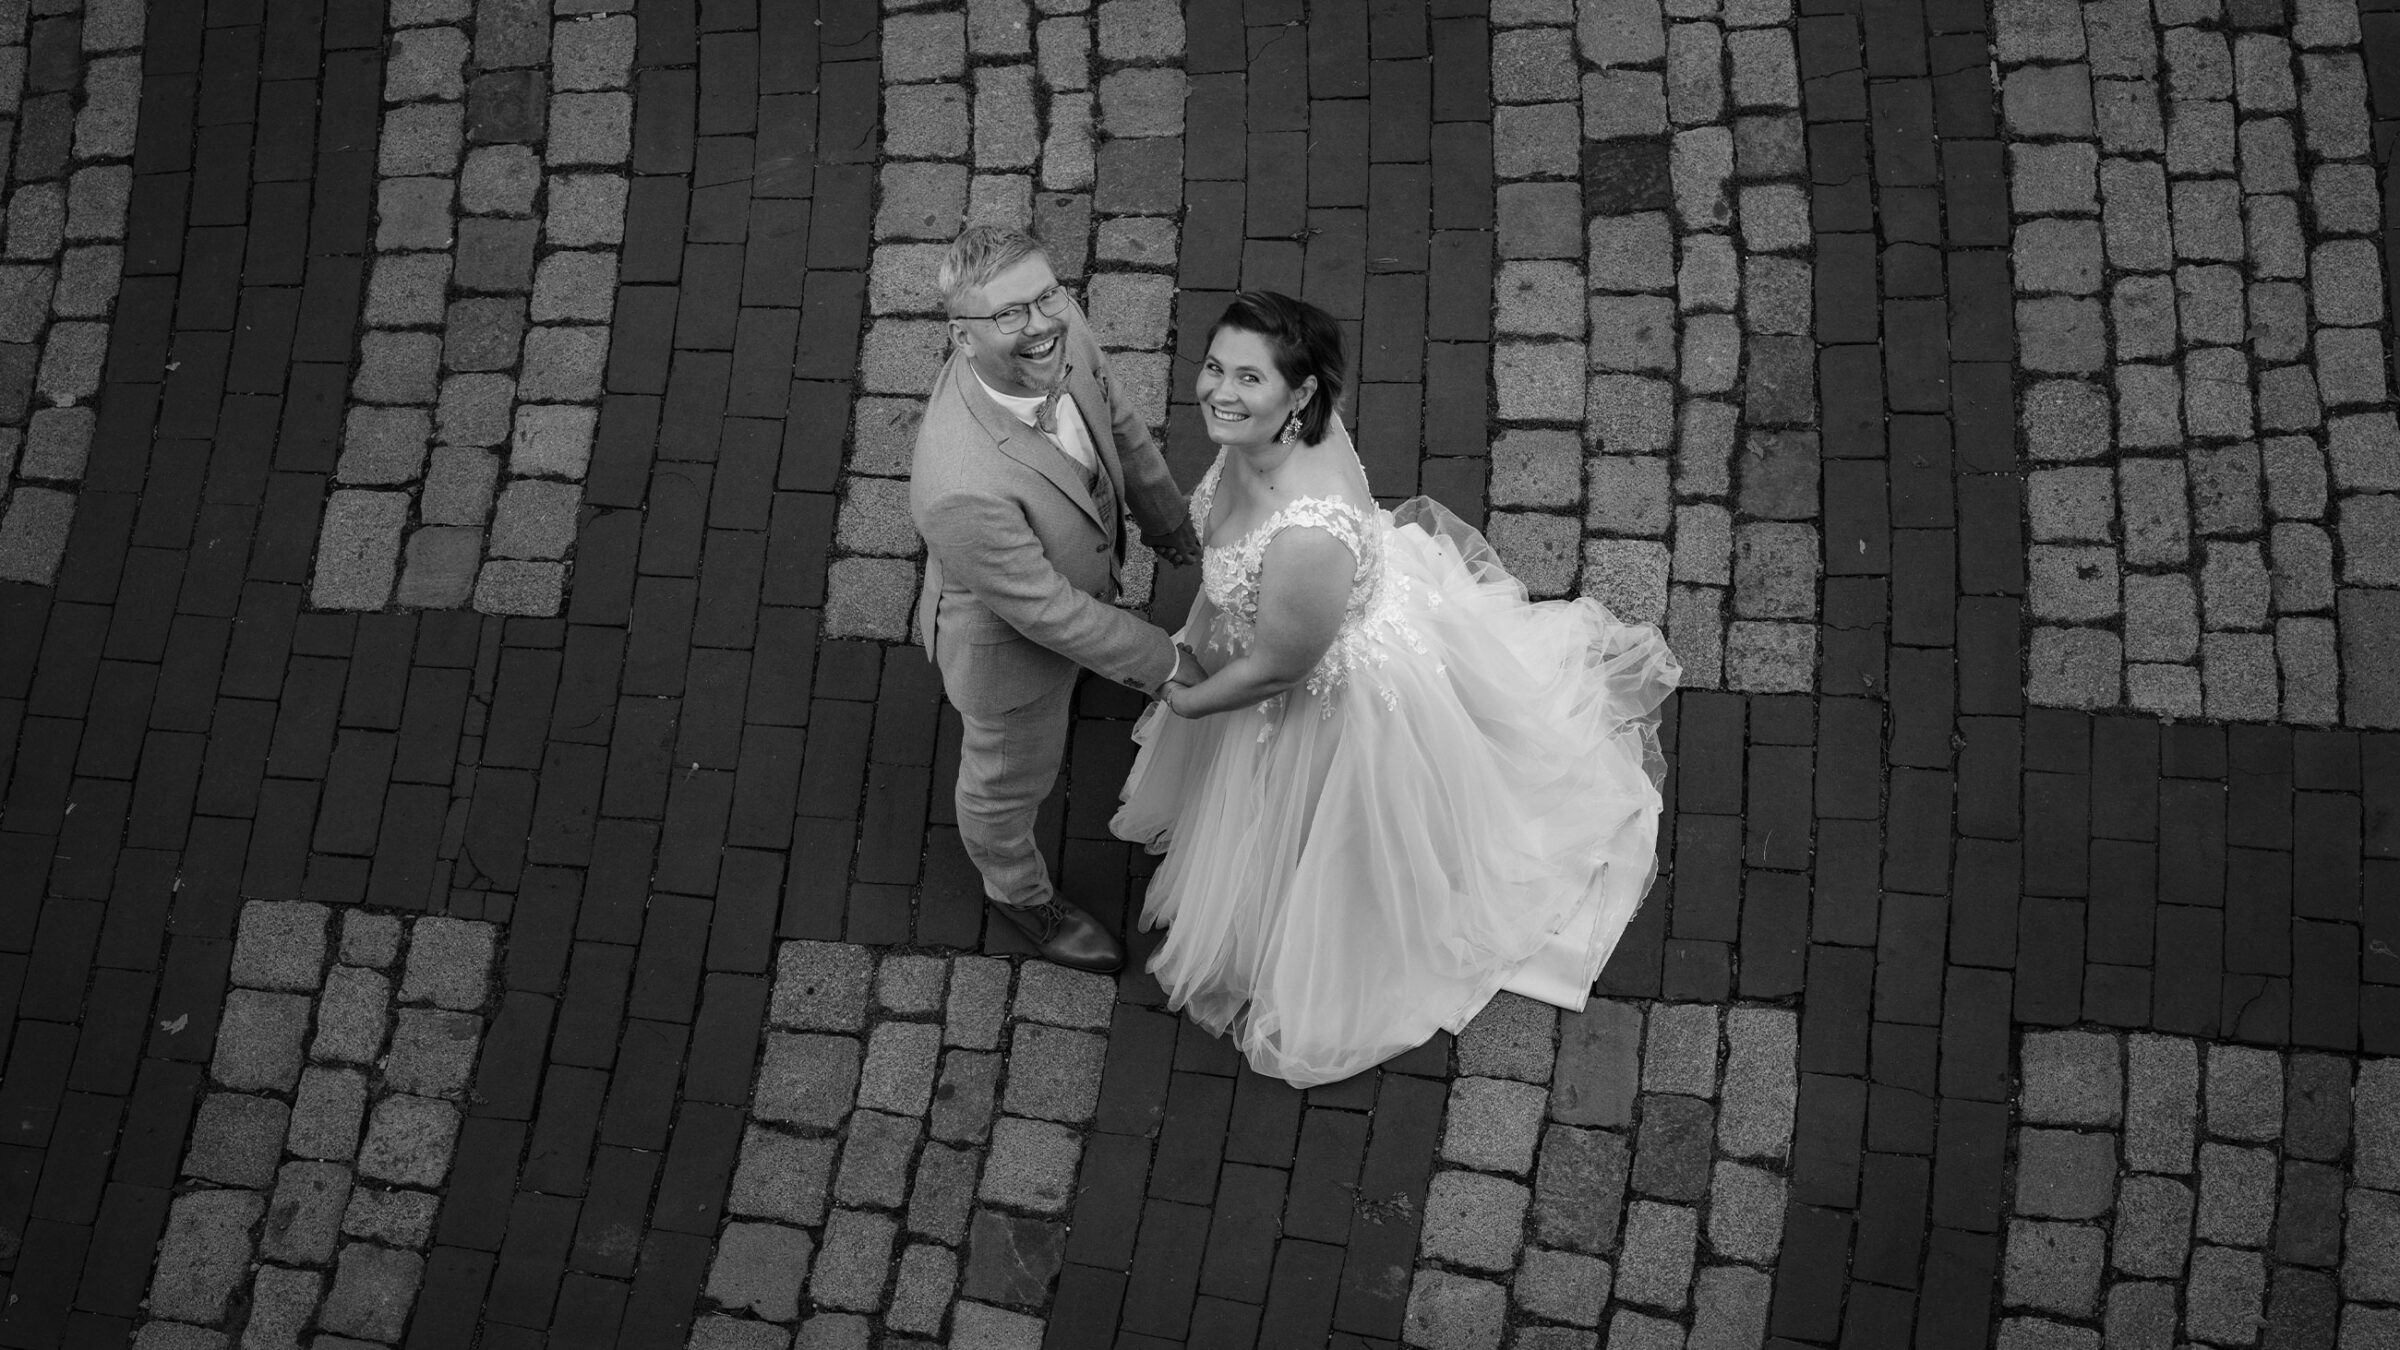 Brautpaar in Hochzeitskleidung steht auf einem gepflasterten Weg und lächelt in die Kamera.